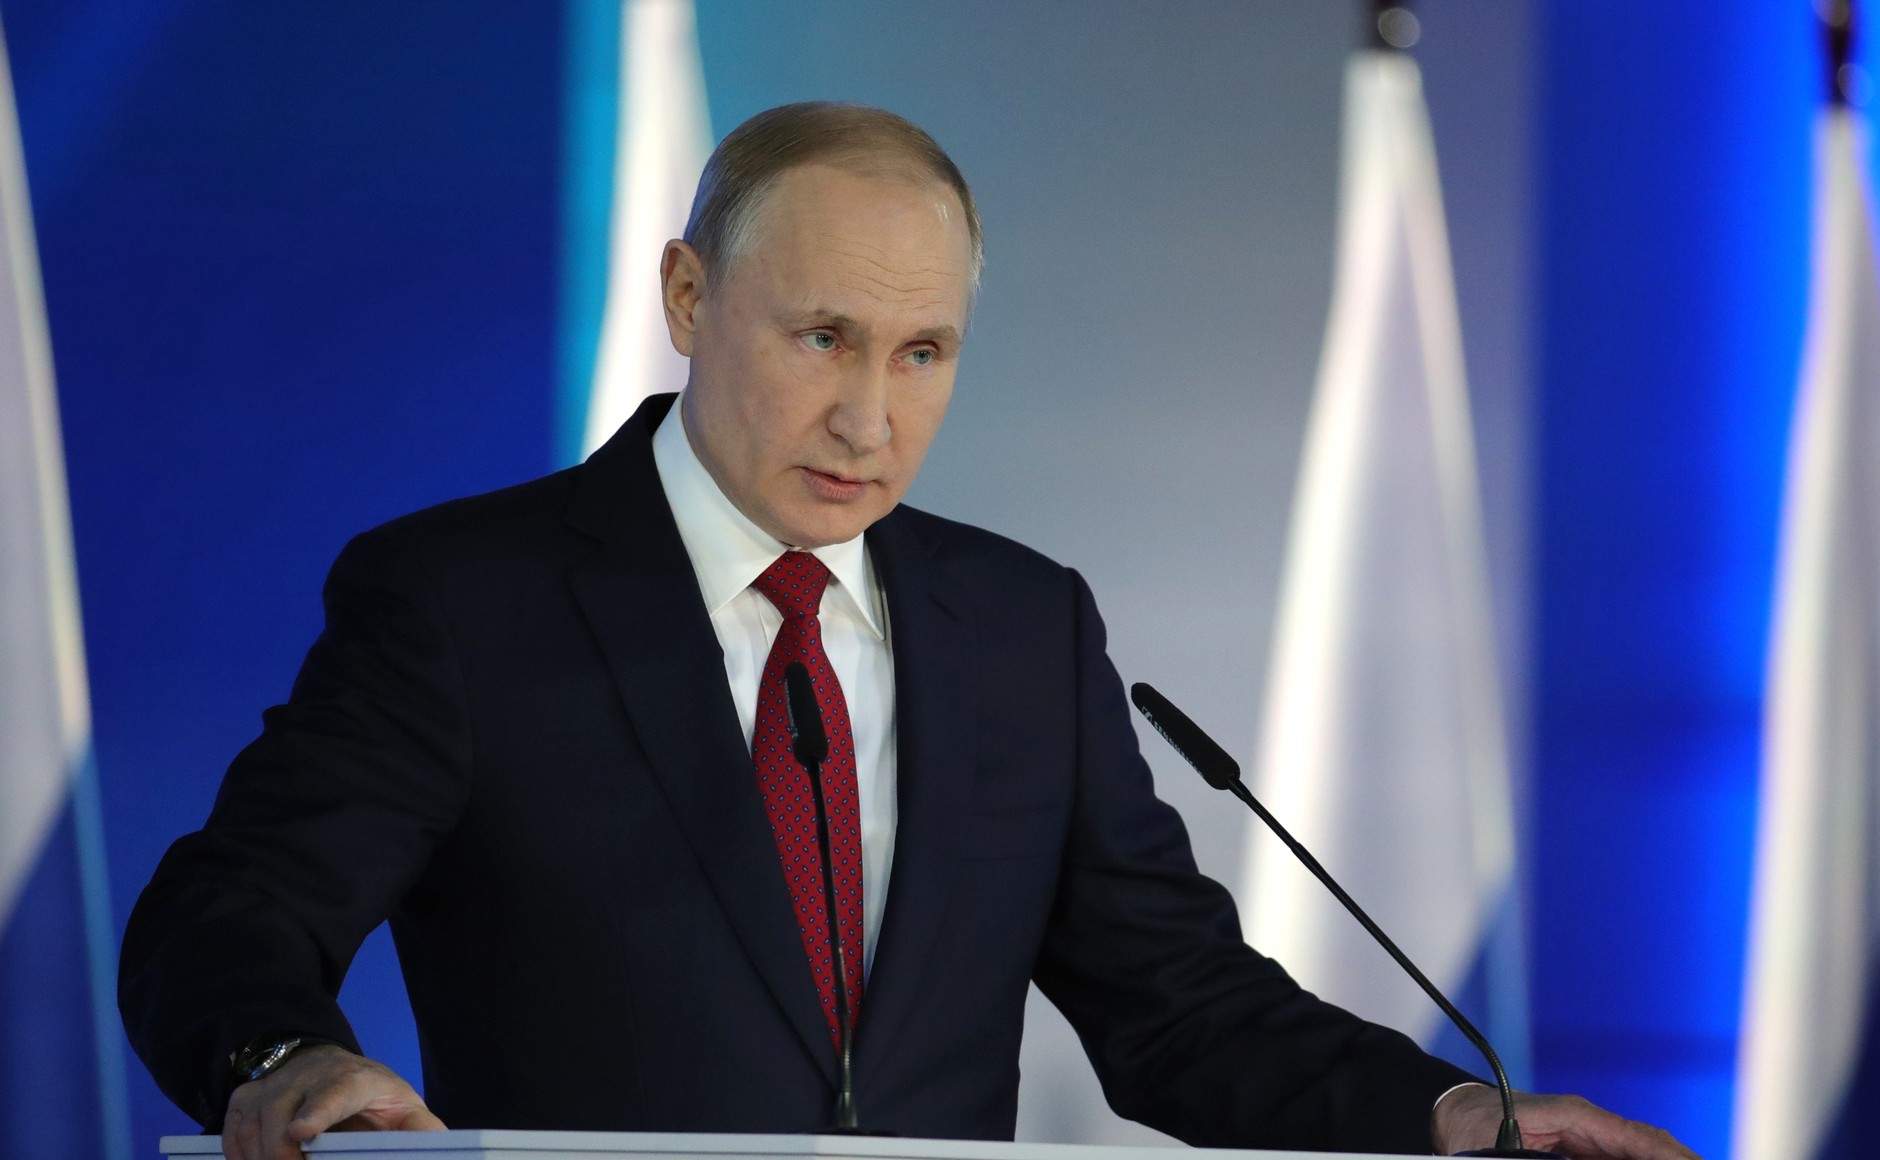 Глава государства добавил, что Москва выполняет все решения Европейского суда, даже если они были «явно неправовыми» Фото: © Global Look Press / Kremlin Pool